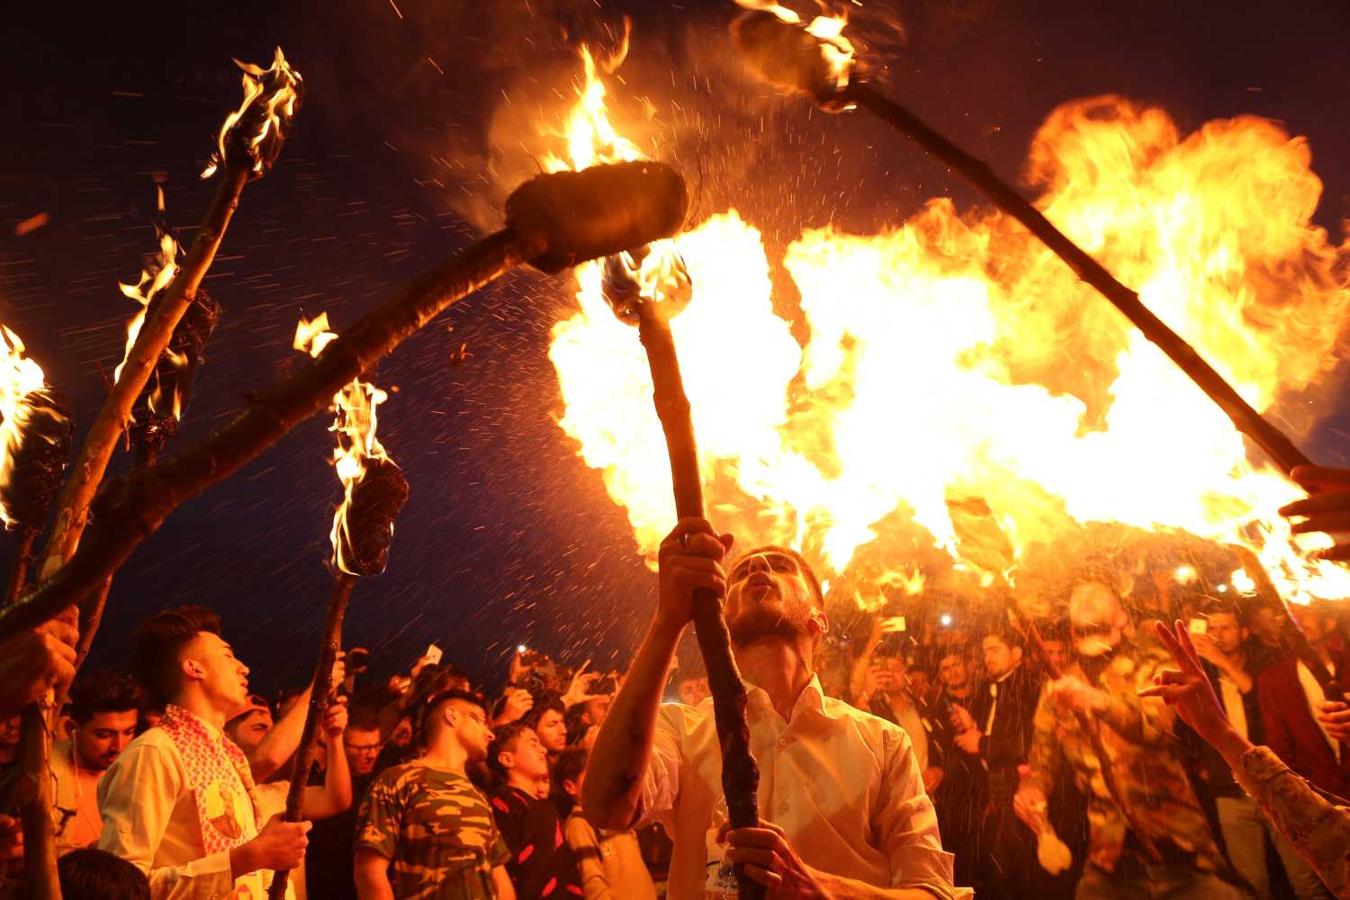 Kurdos realizan una danza de antorchas durante la celebración de Nouruz, en Aqrah, región del Kurdistán, al norte de Irak. El año nuevo persa Nouruz se ha celebrado durante más de 3000 años y es el más reverenciado en el mundo persa, que incluye regiones de Irán, Afganistán, Azerbaiyán, Turquía, el occidente de China y el norte de Irak